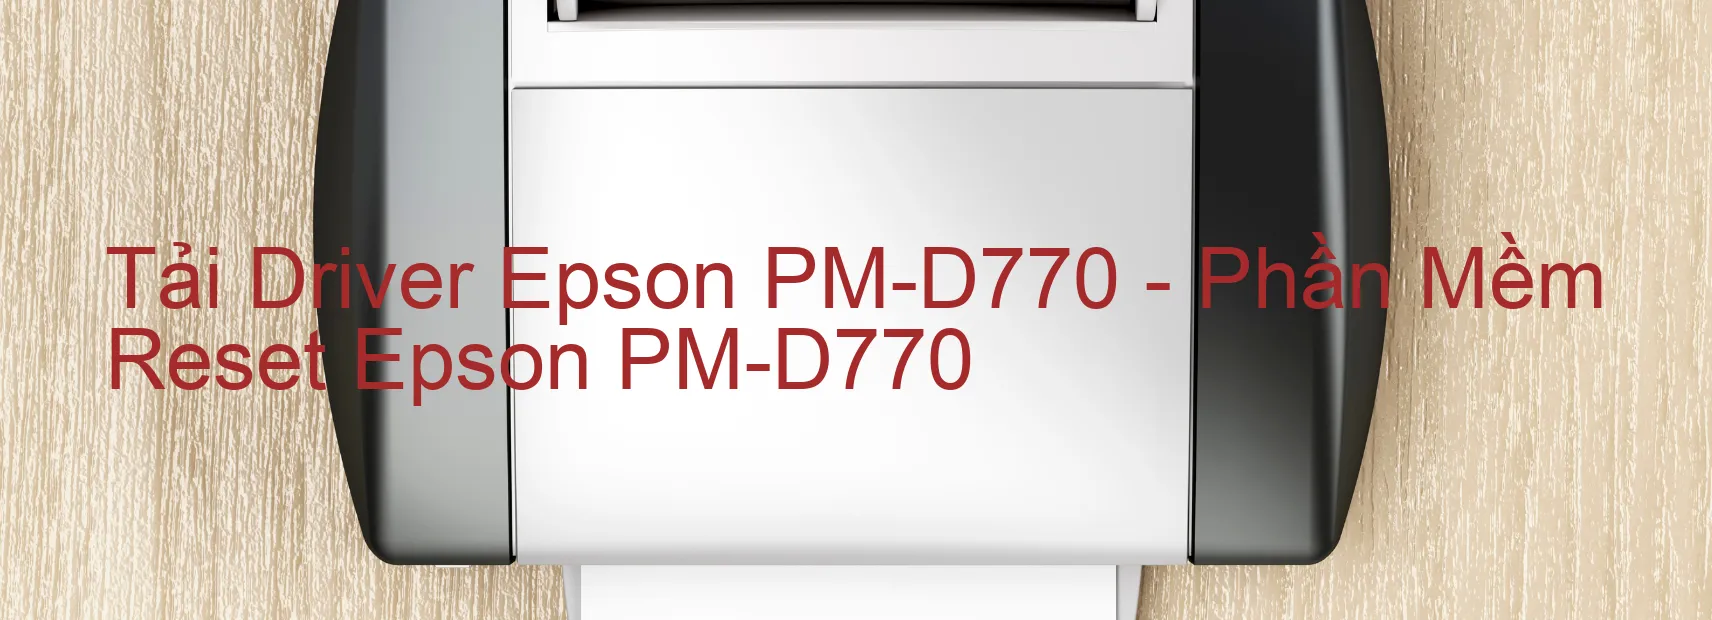 Driver Epson PM-D770, Phần Mềm Reset Epson PM-D770